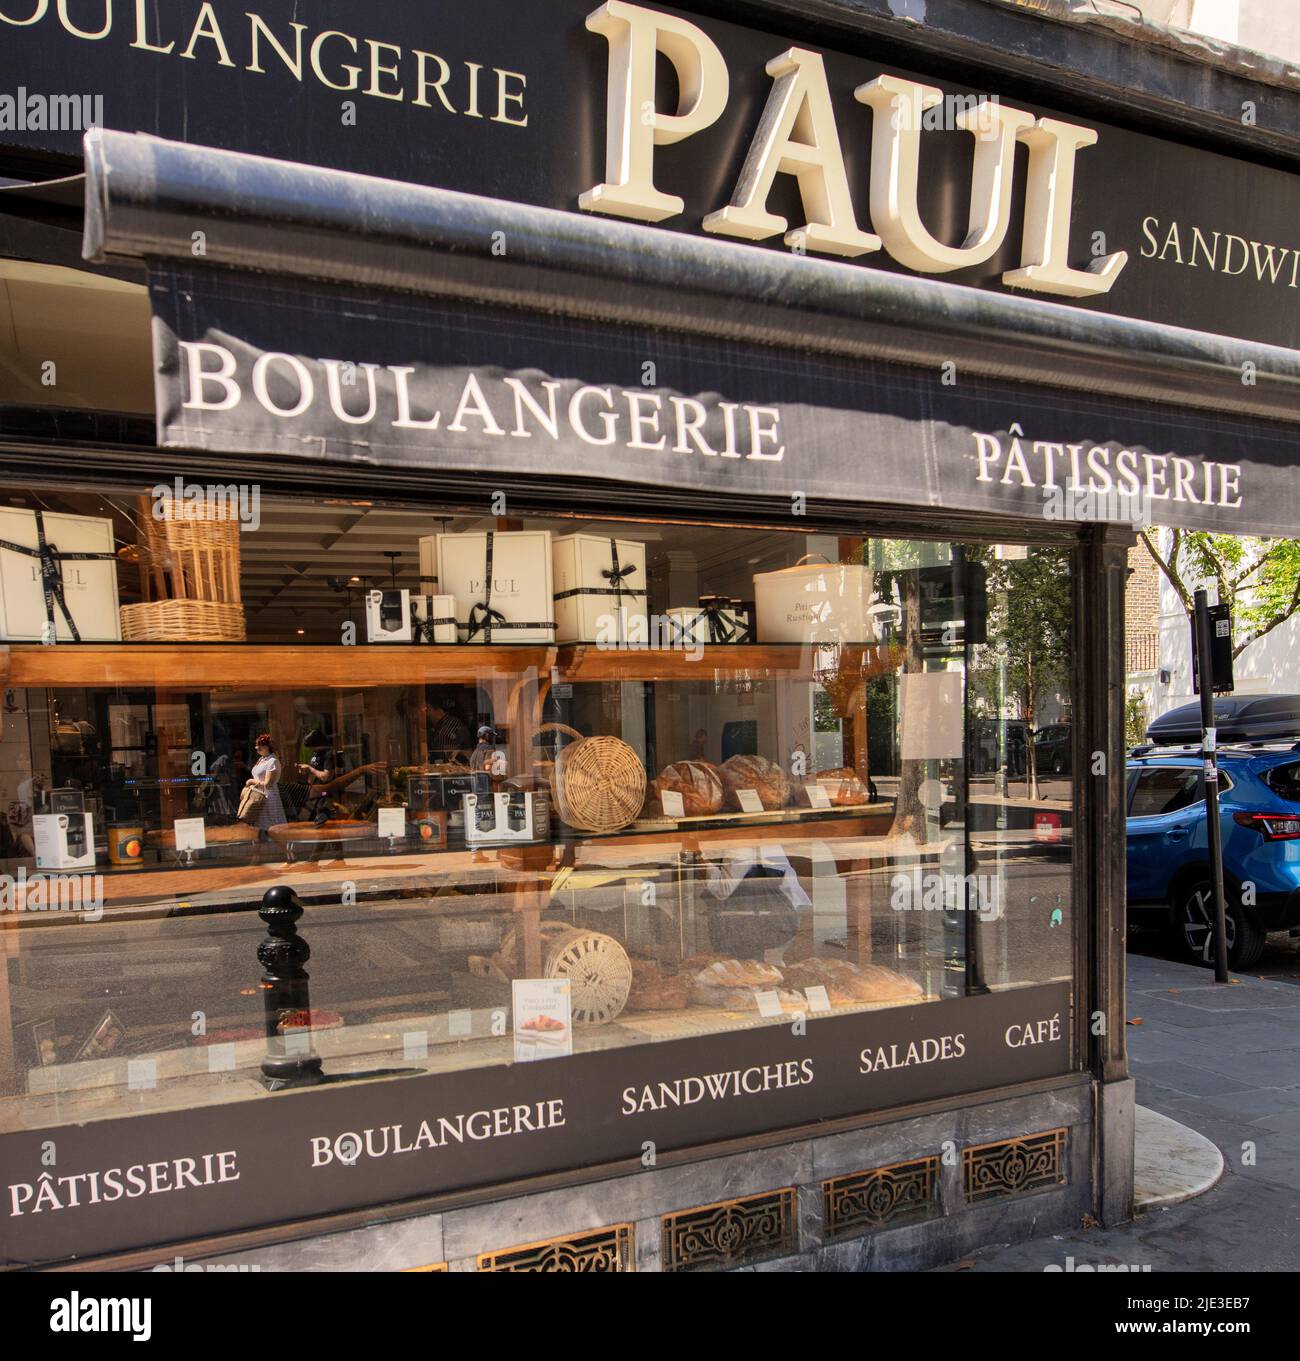 La tienda Paul en King's Road, Londres, Reino Unido, vende pan y pasteles; una calle de tiendas de moda que se encuentra a 2 km de Fulham a Sloane Square Foto de stock